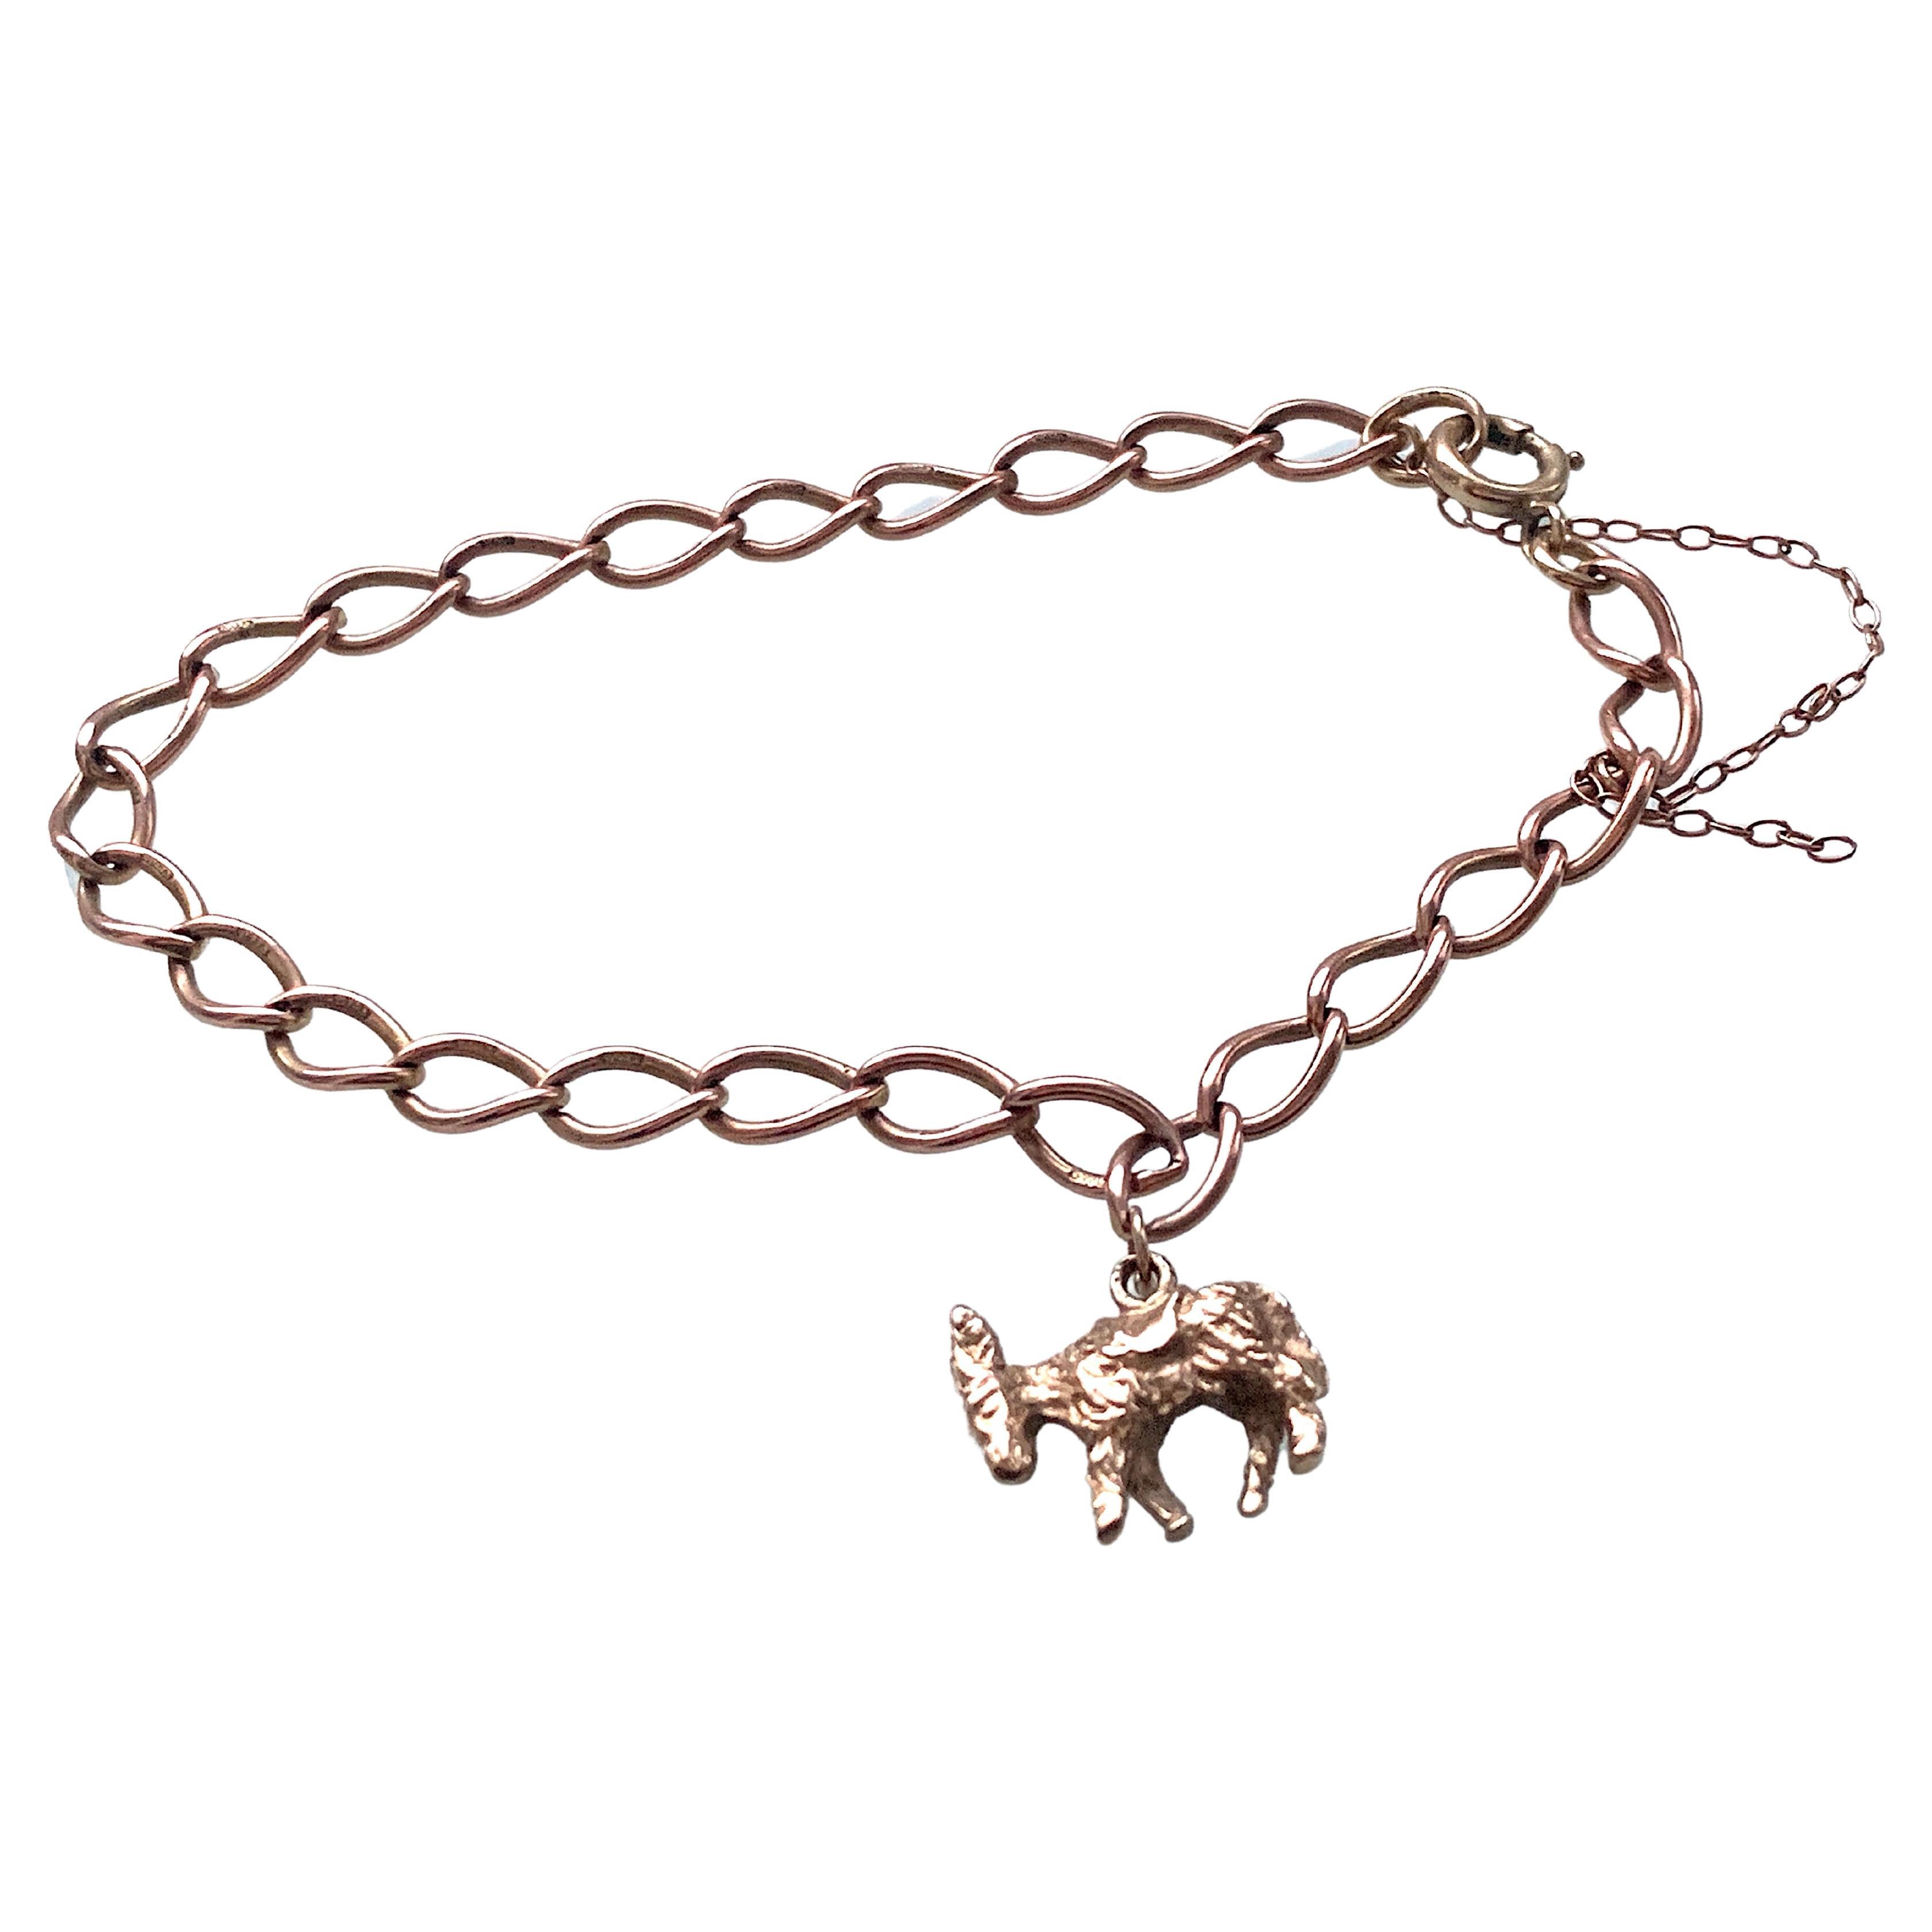 Vintage Rose Gold Bracelet with a Donkey Charm